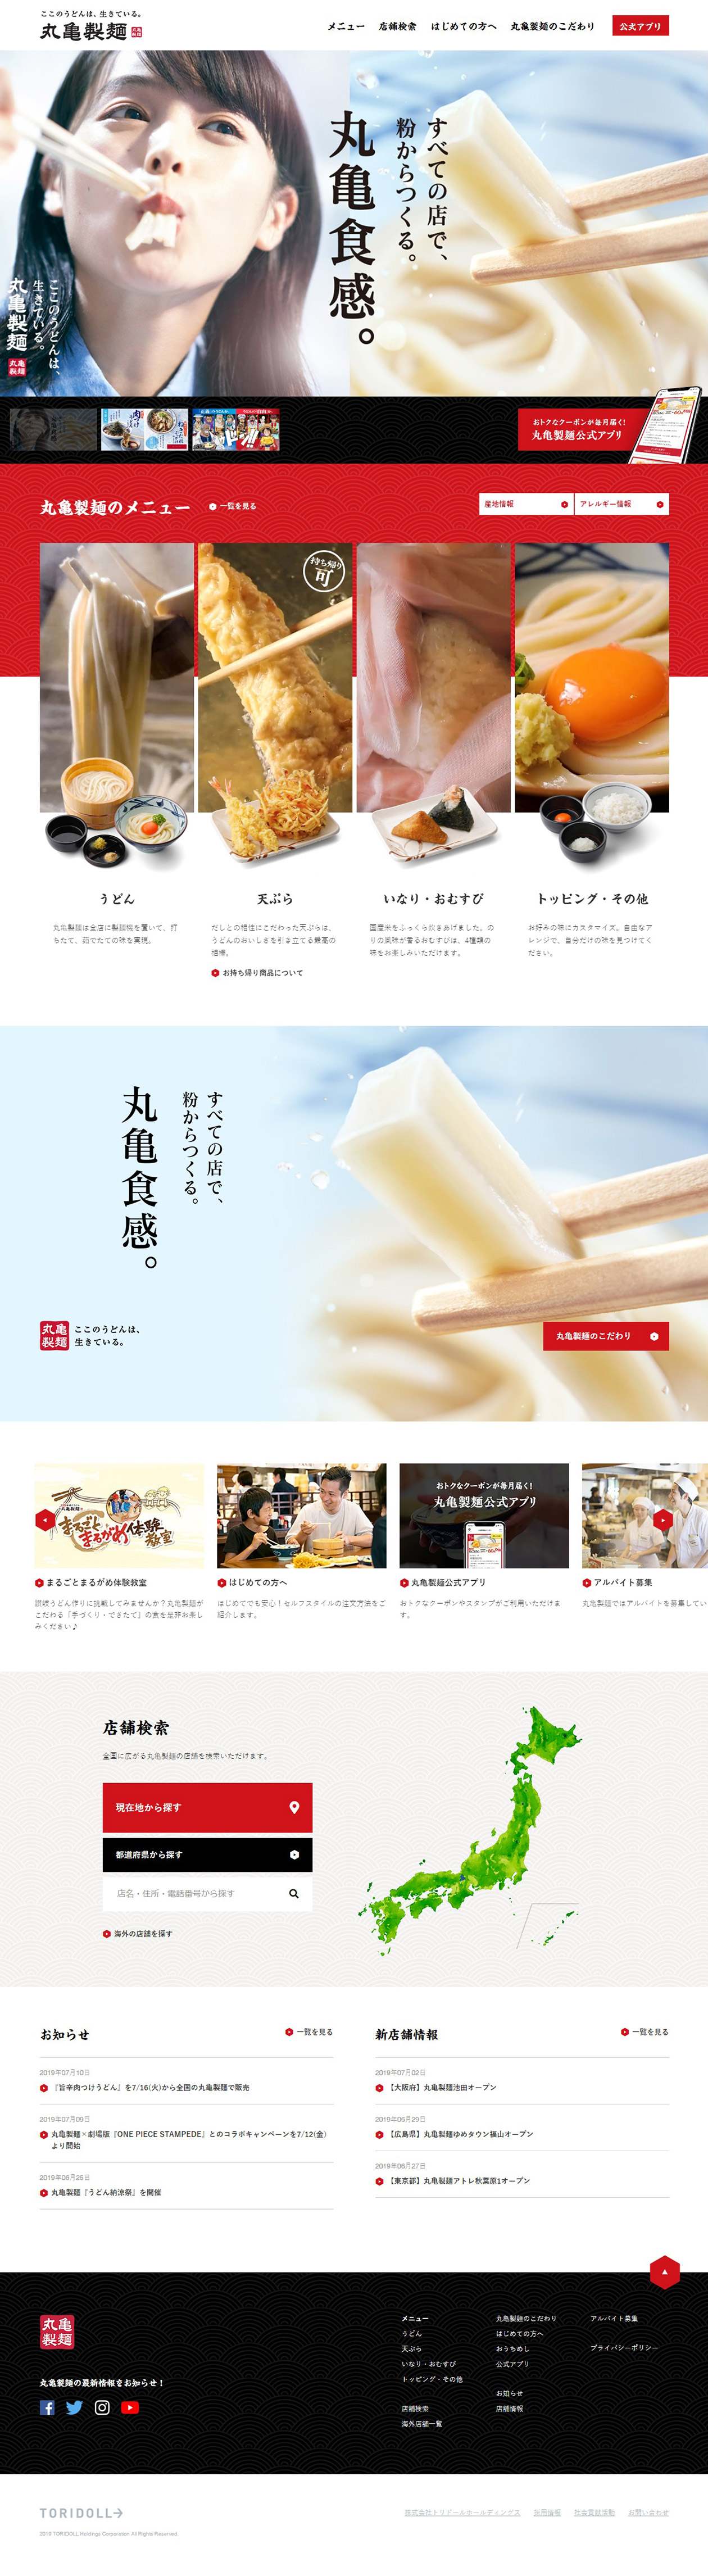 讃岐釜揚げうどん 丸亀製麺 Sankou Webデザインギャラリー 参考サイト集